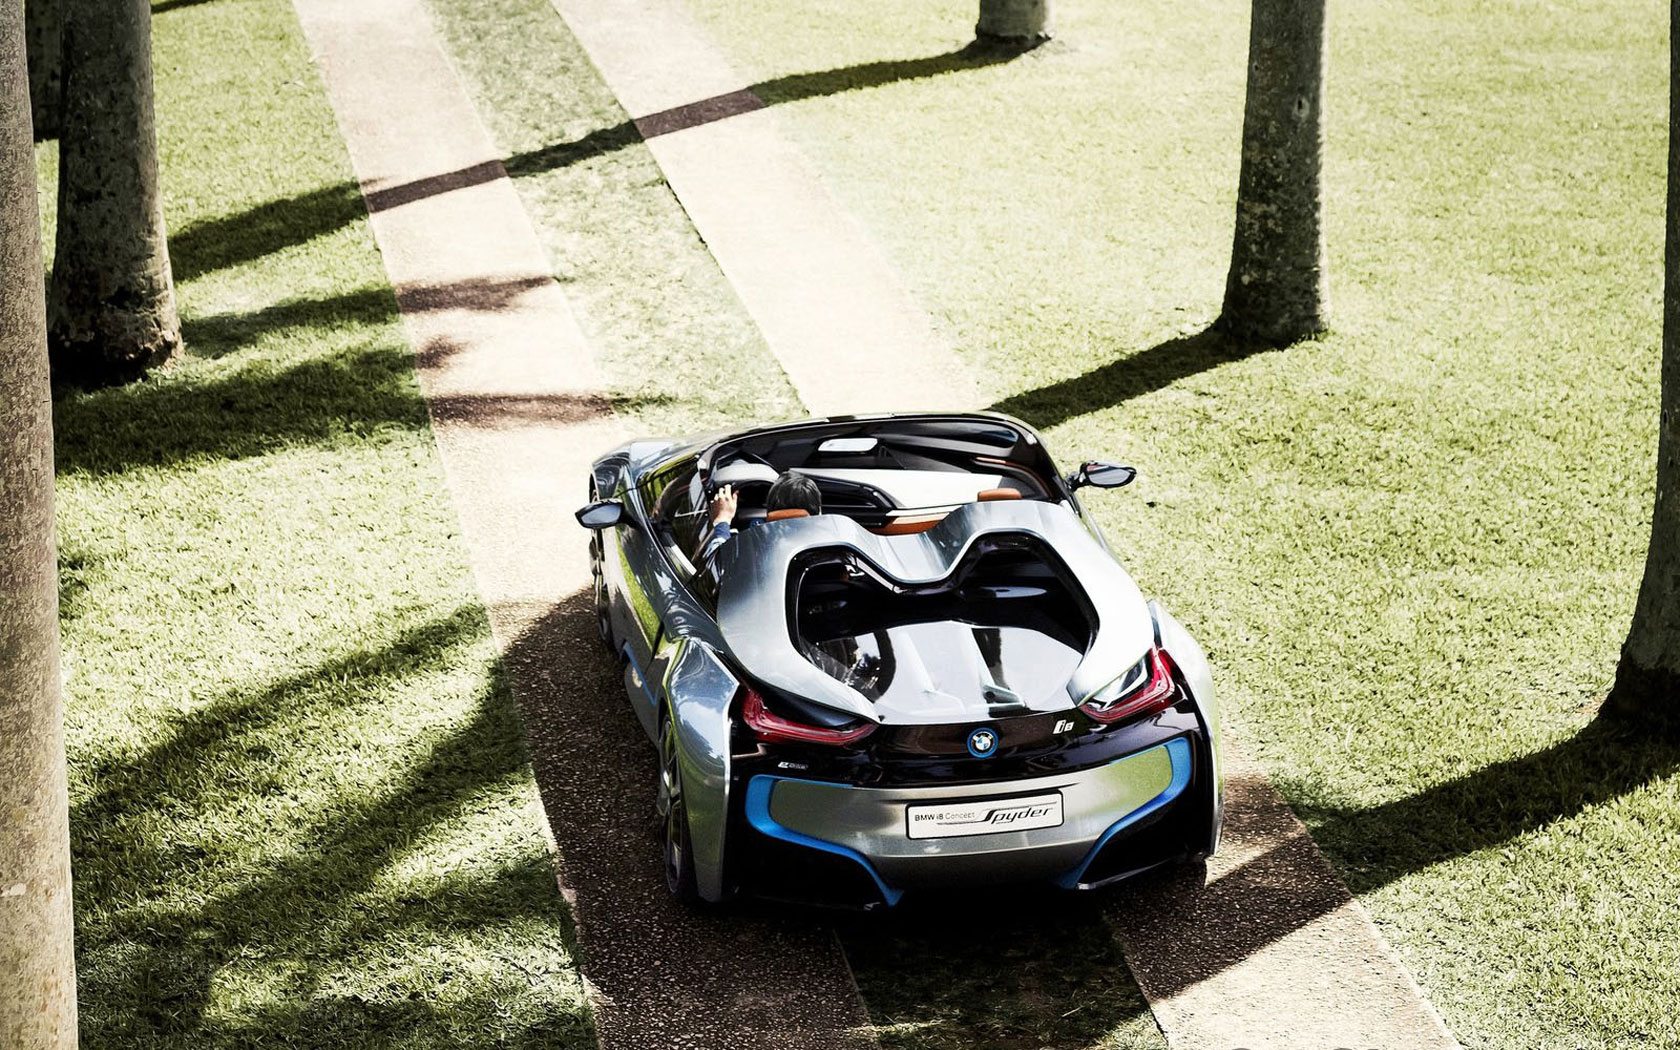  BMW i8 Spyder Concept 